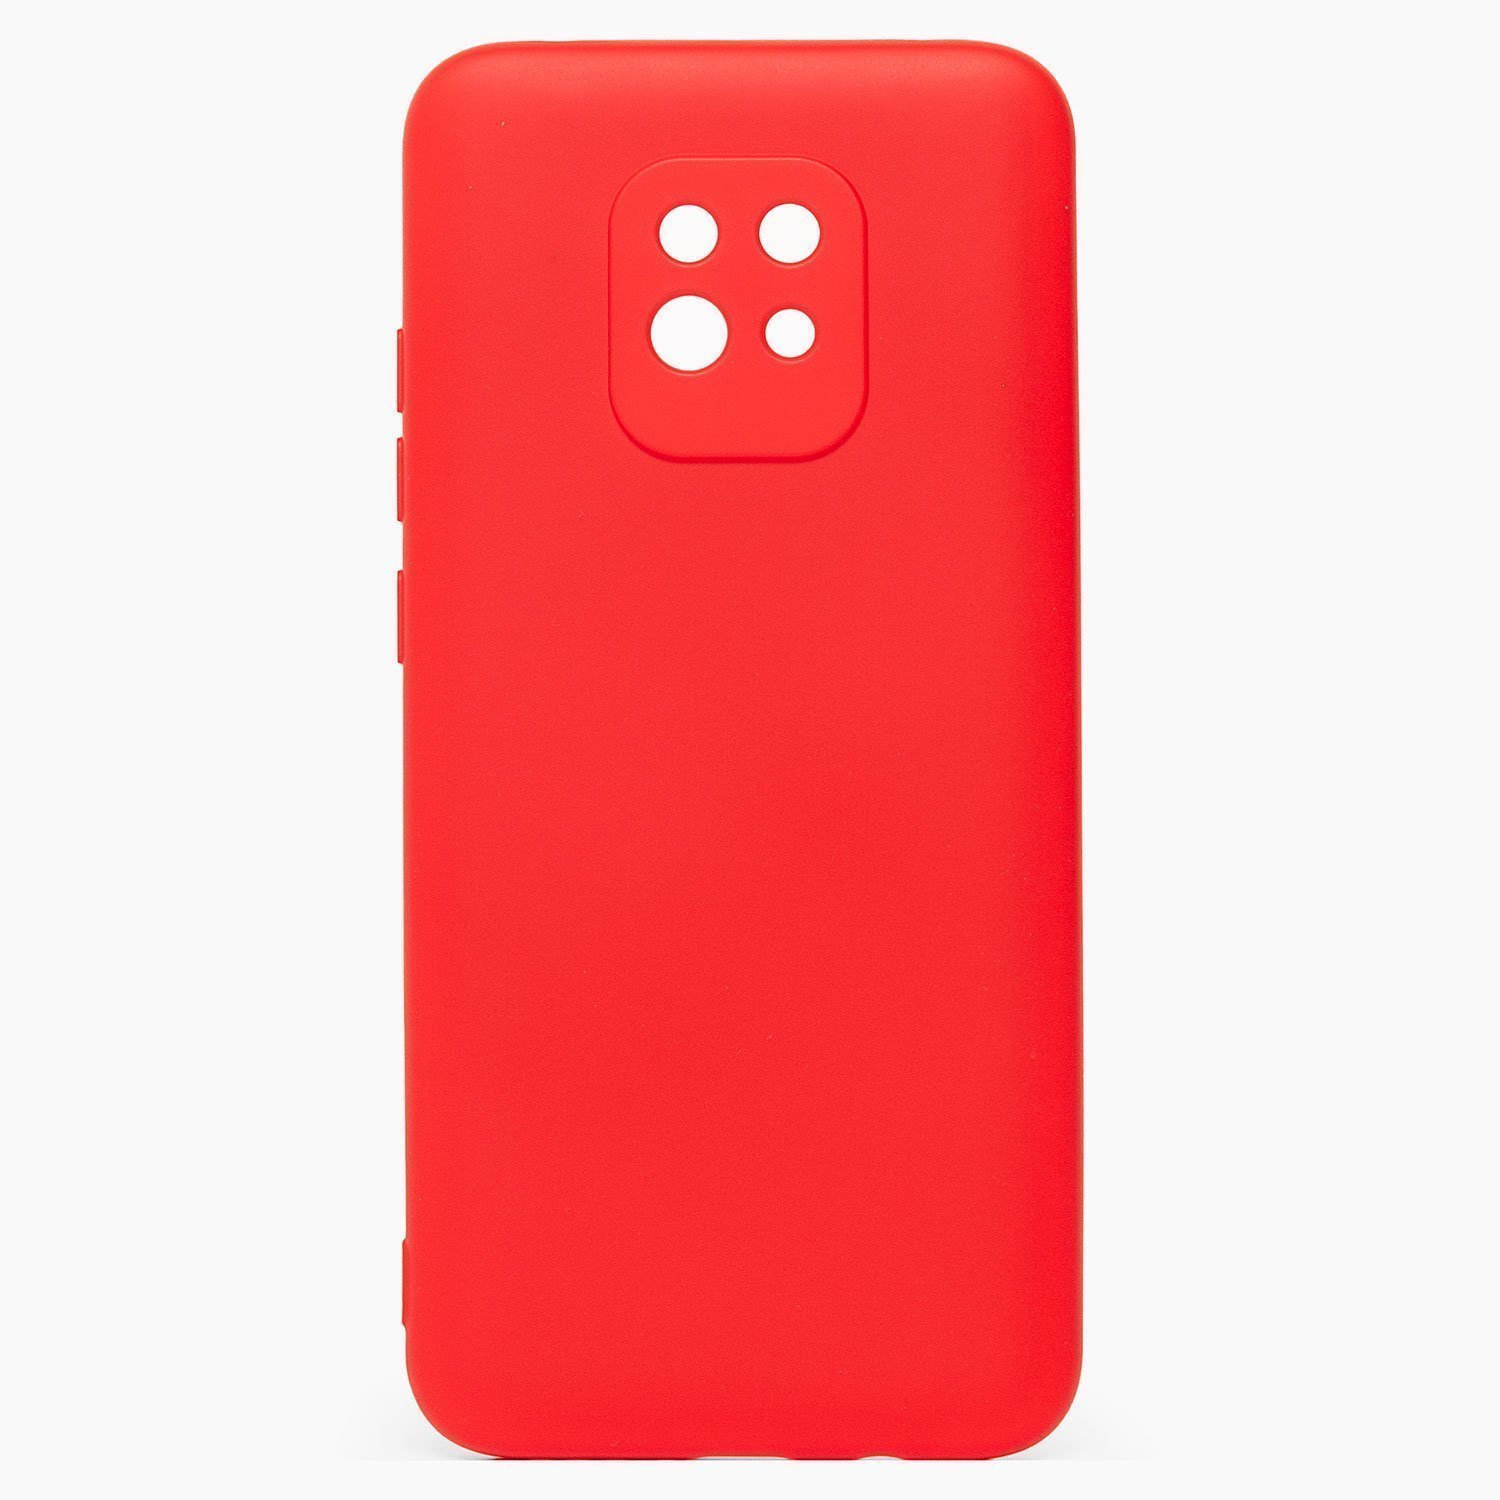 Чехол-накладка Activ Original Design для смартфона Xiaomi Redmi 10X, soft-touch, красный (117305)